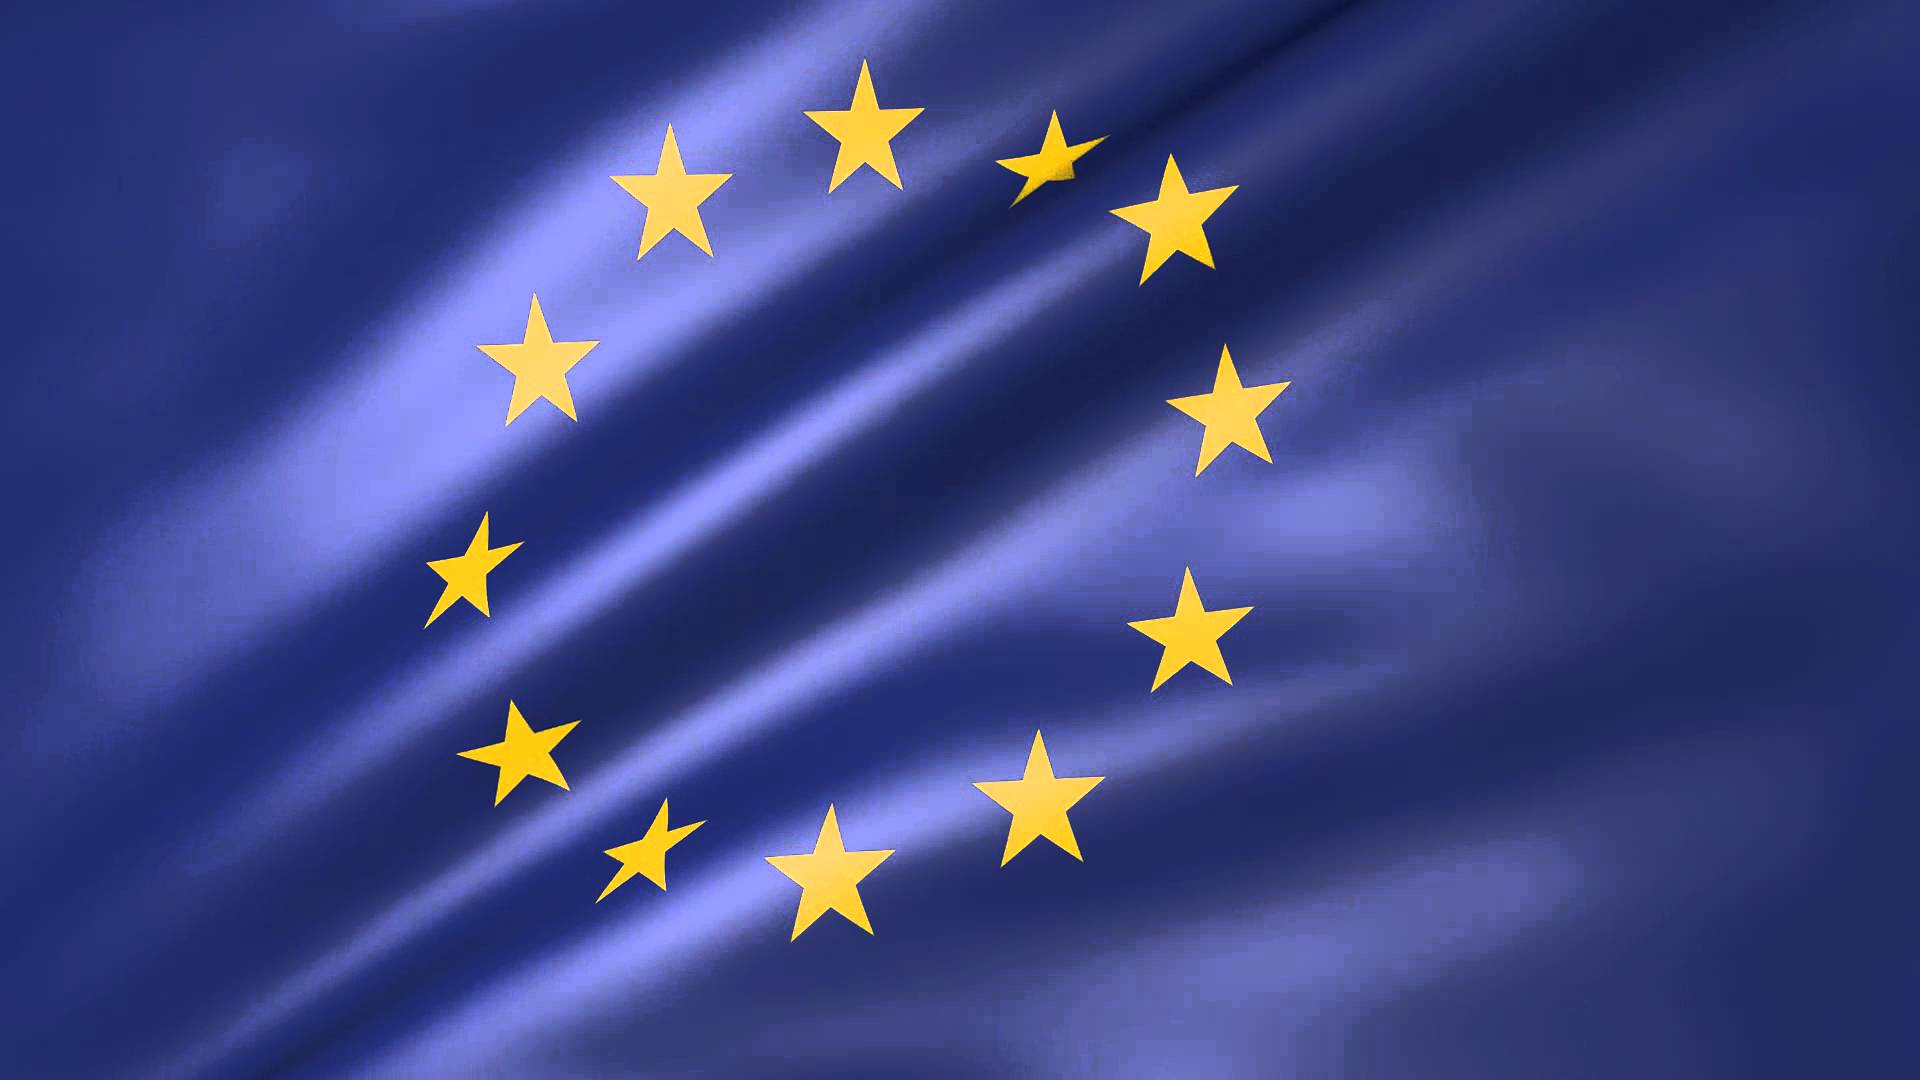 European Union Flag Wallpaper Free European Union Flag Background